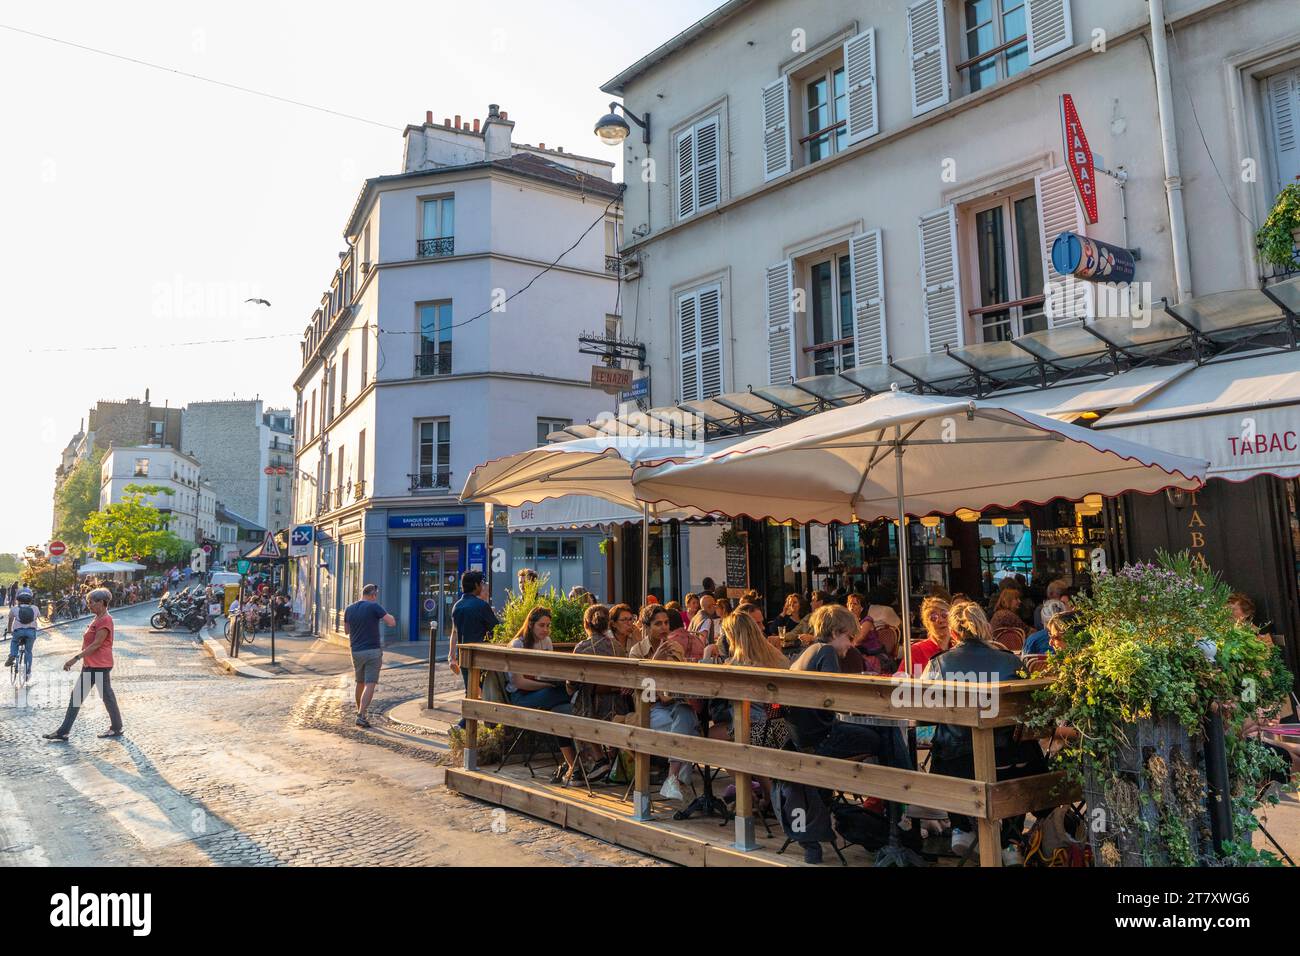 Cafe Restaurant, Montmartre, Paris, France, Europe Banque D'Images